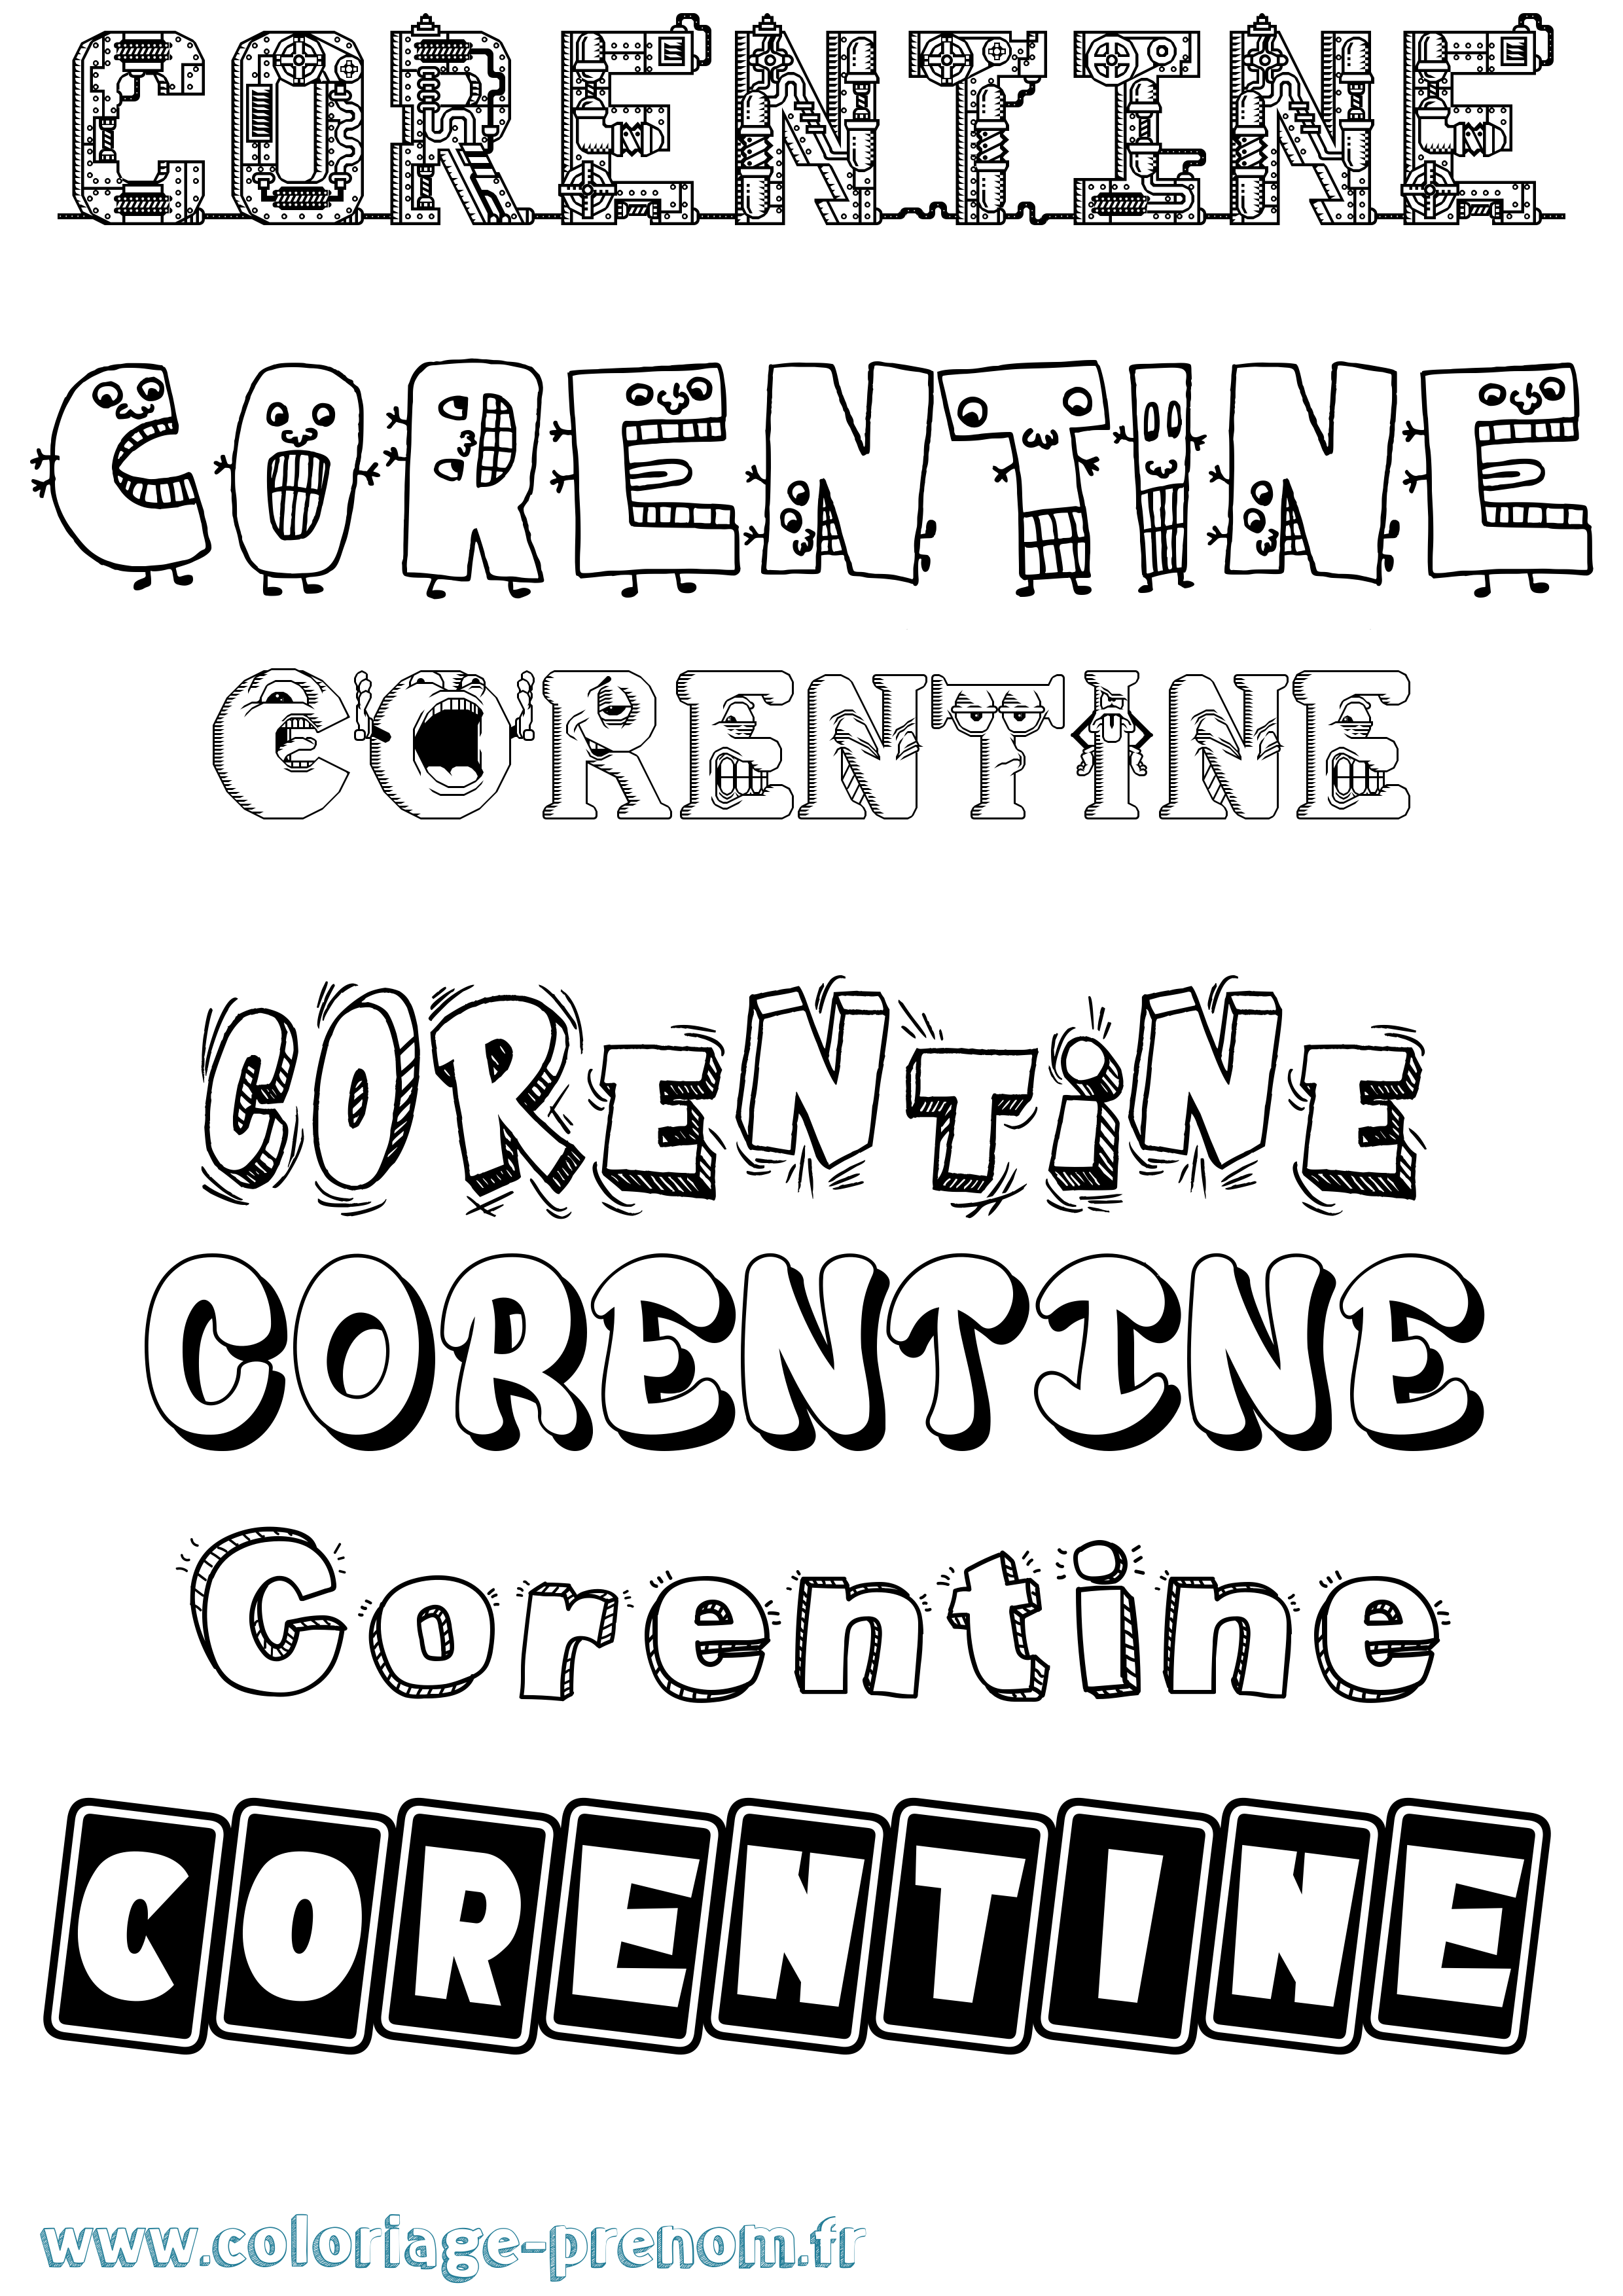 Coloriage prénom Corentine Fun